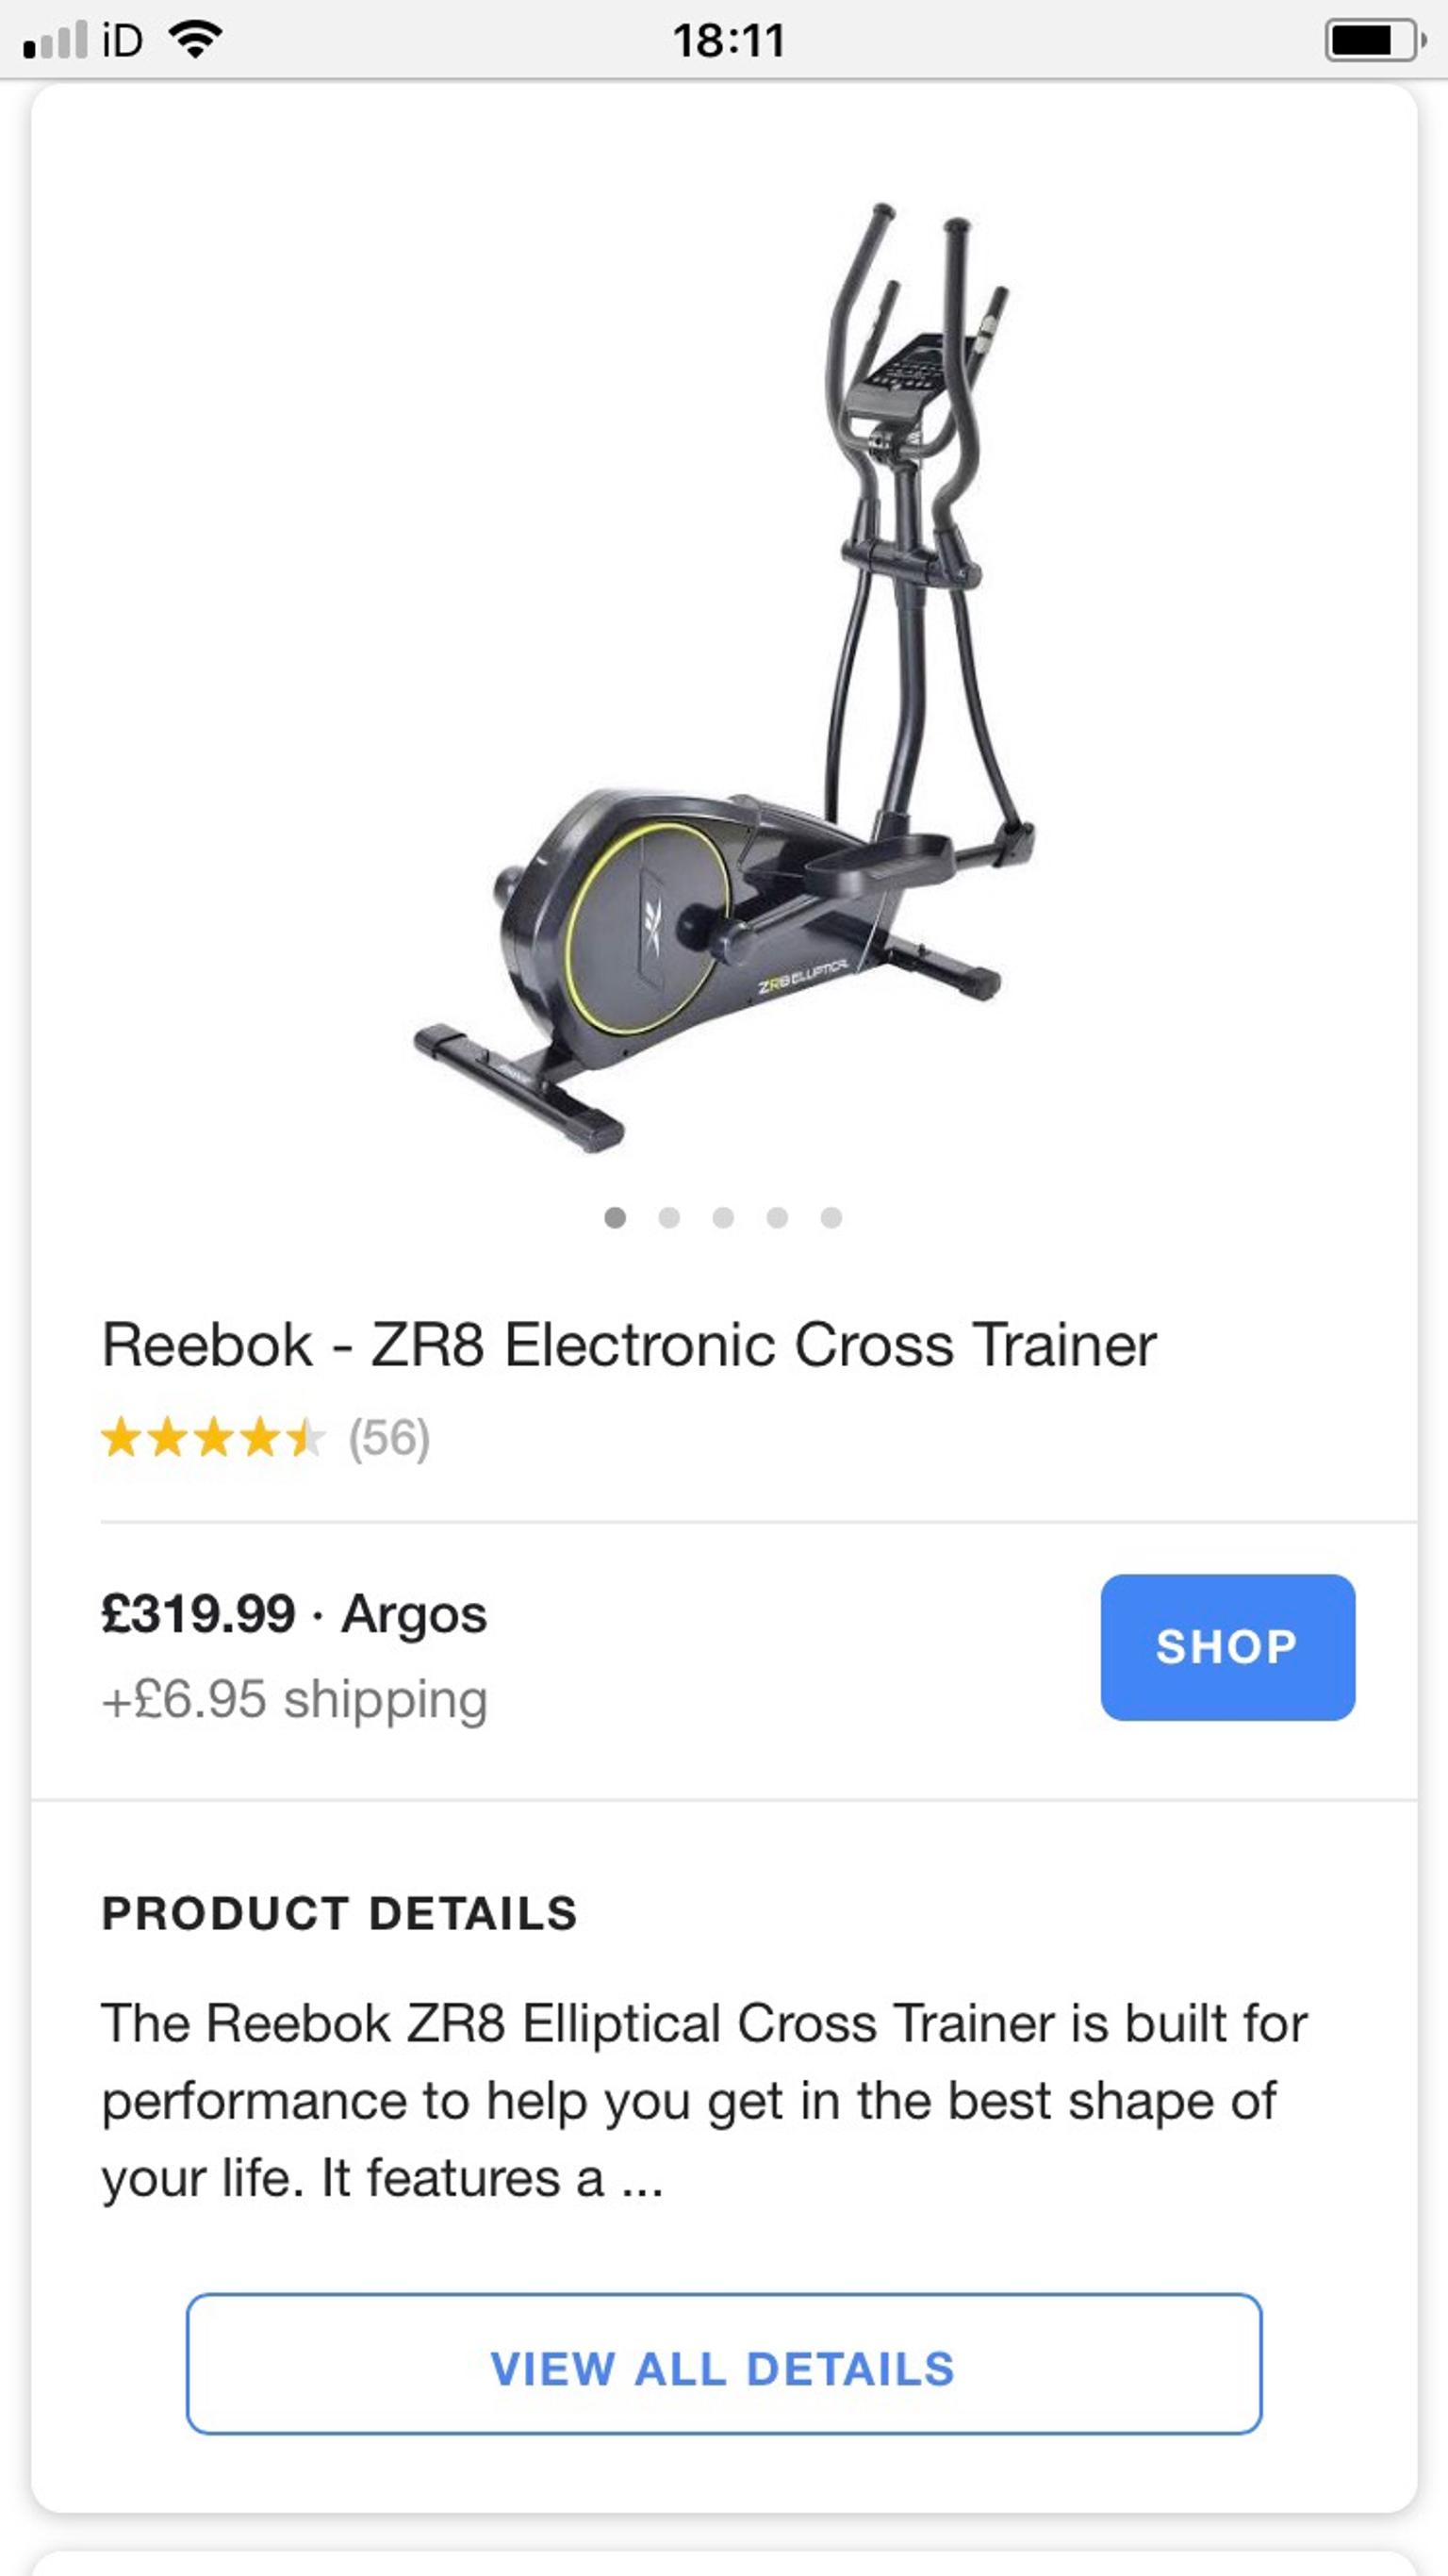 reebok zr8 electronic cross trainer